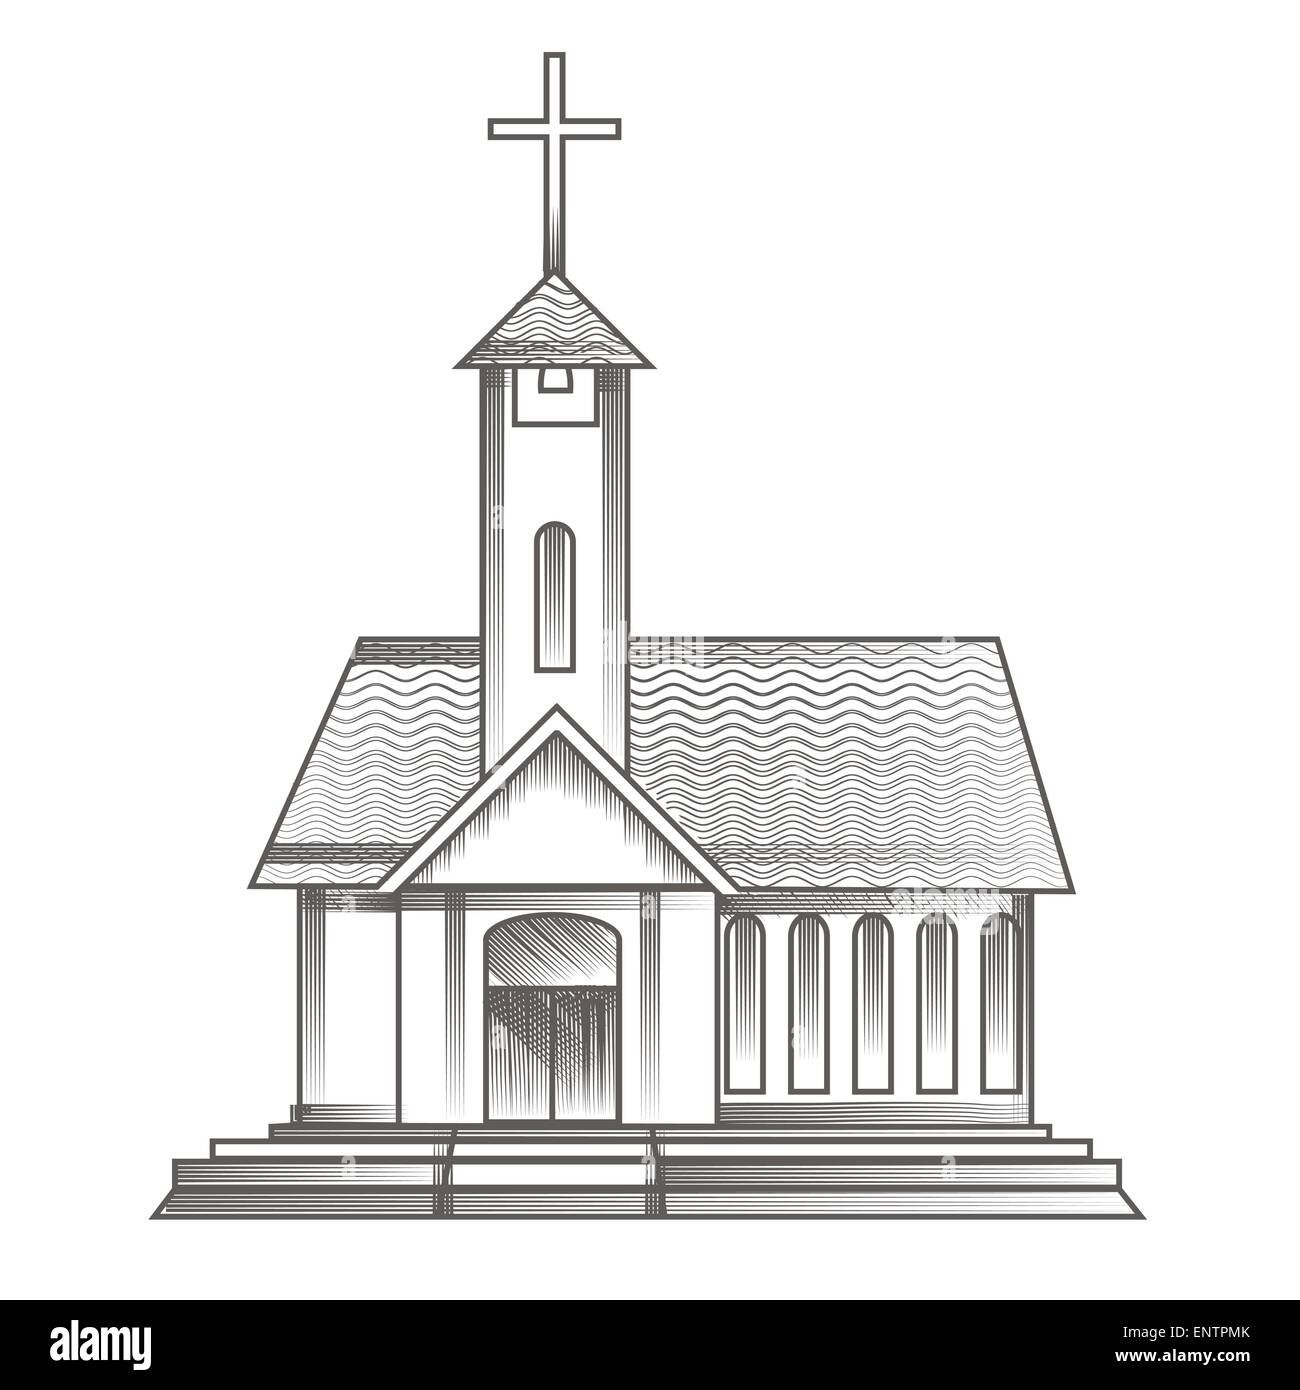 Vektor-Illustration der Kirche in Gravur Stil gezeichnet Stock Vektor